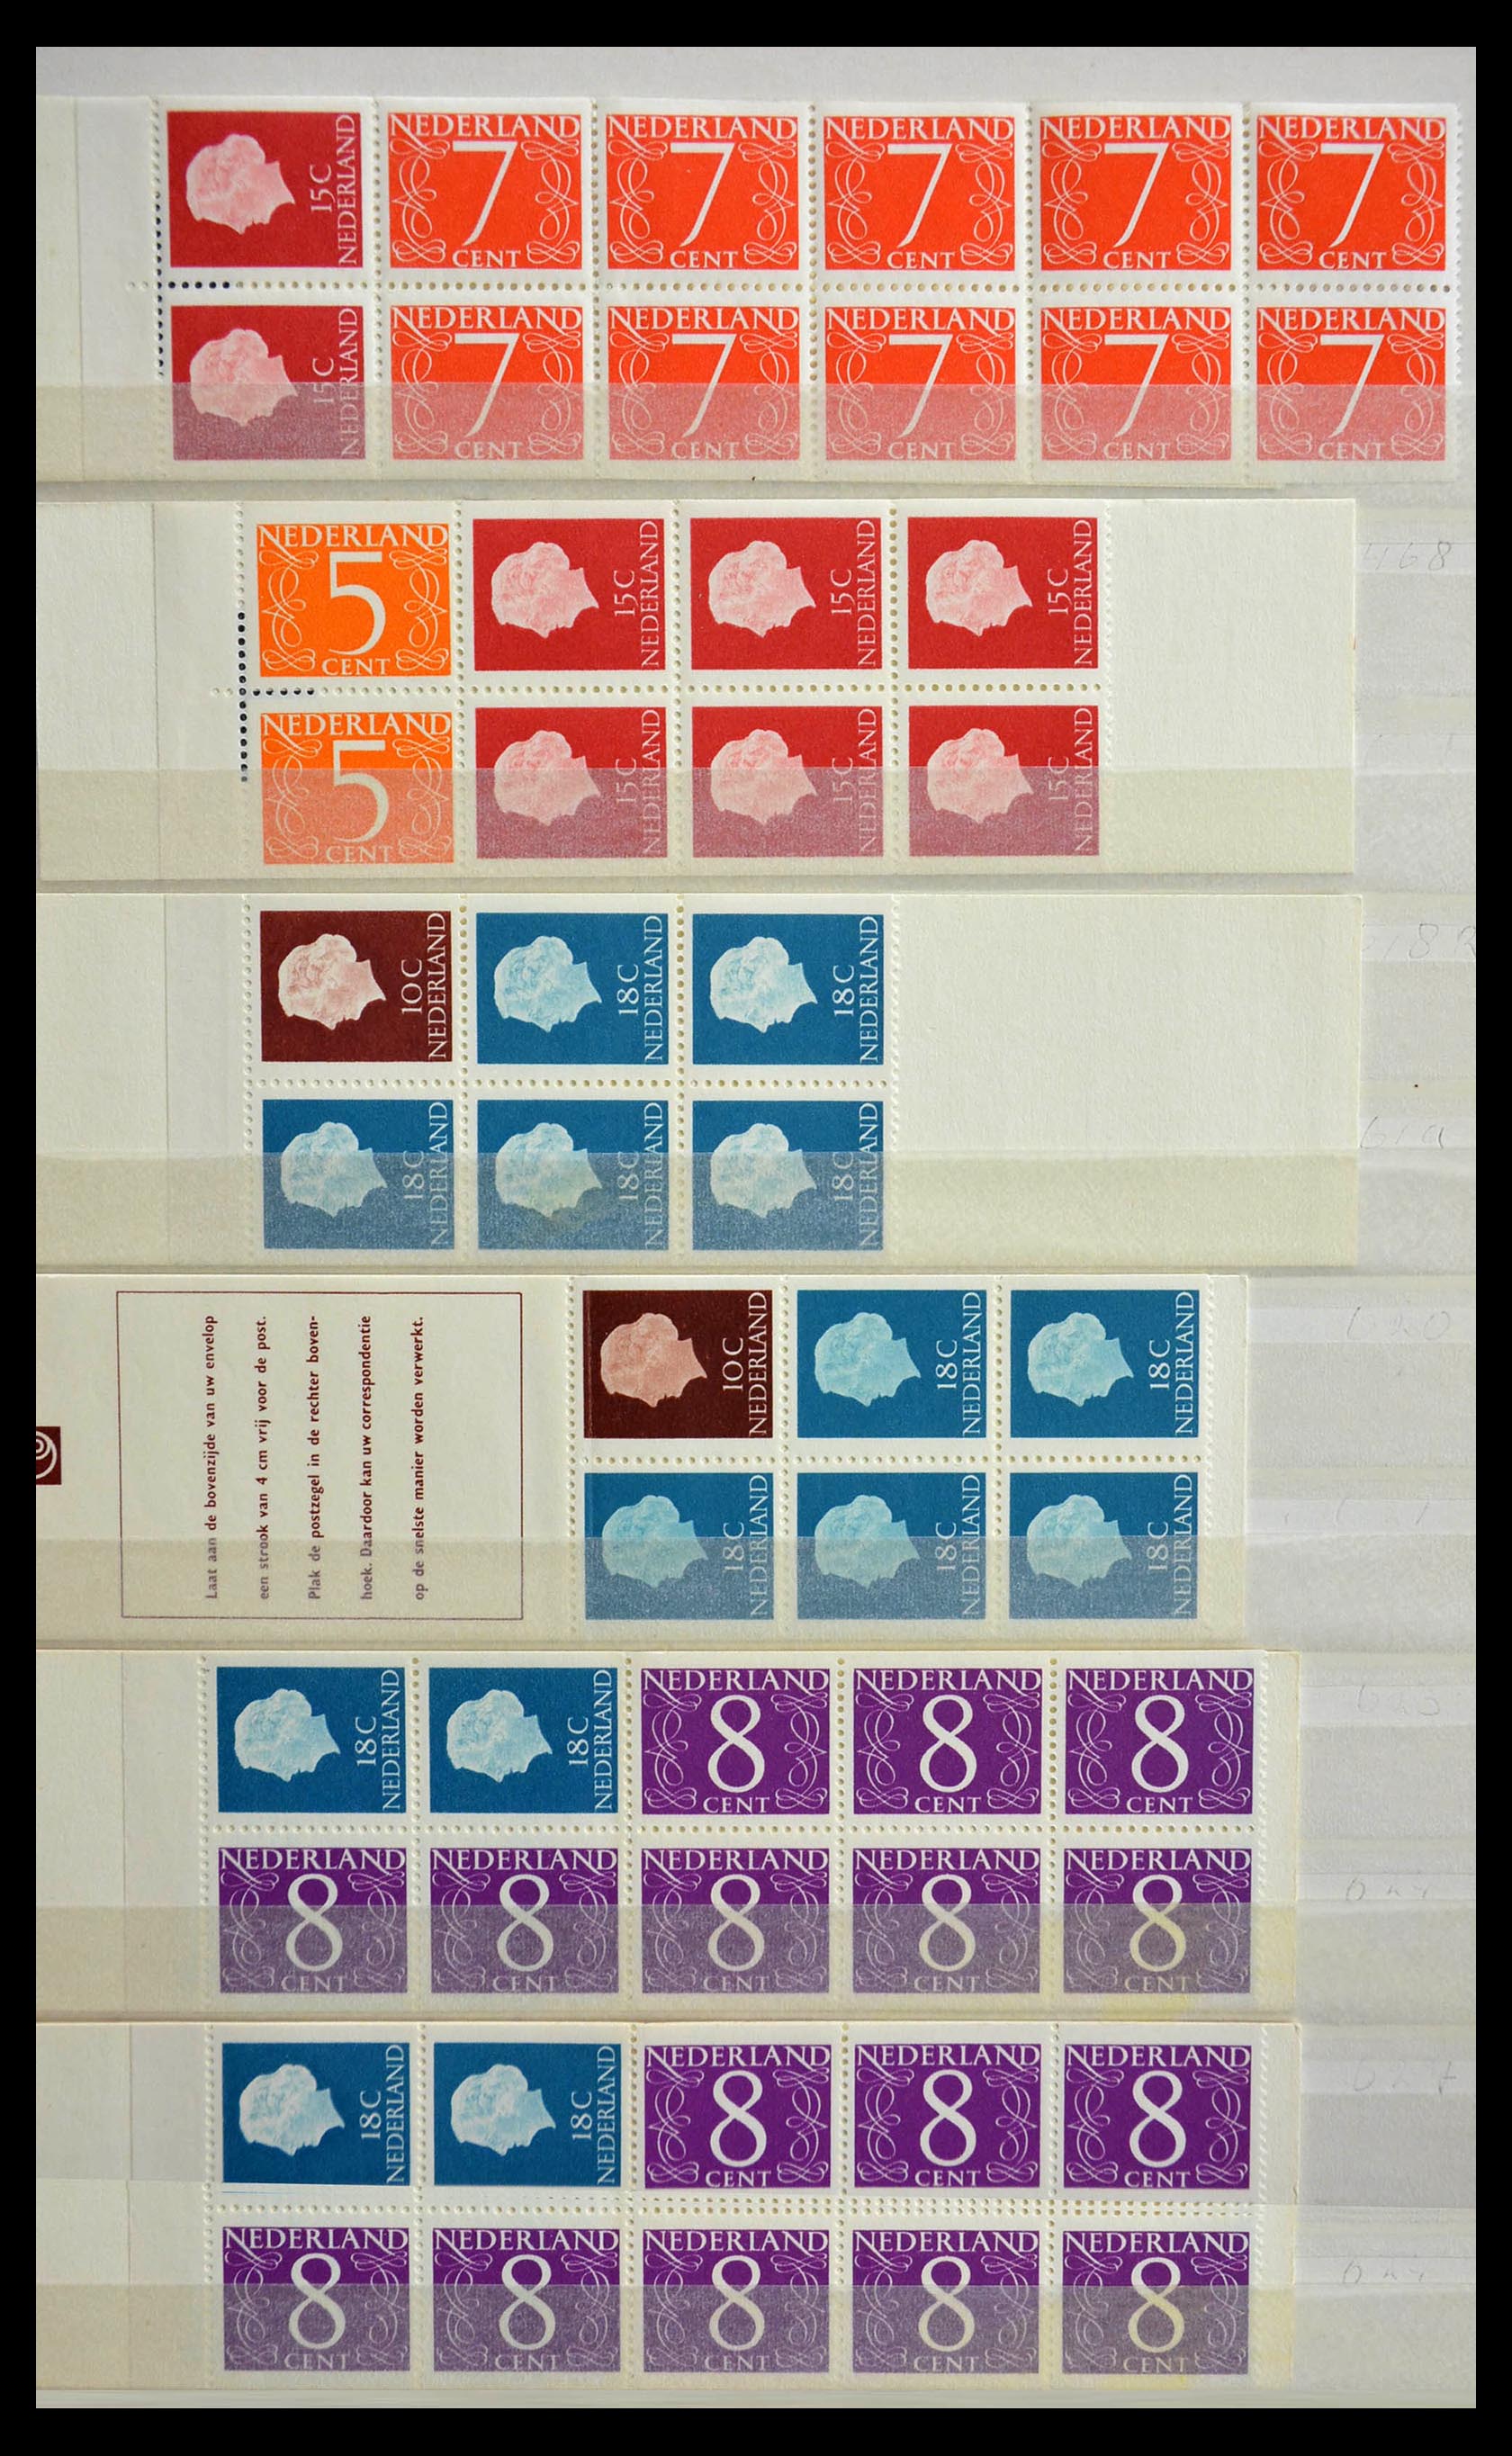 29387 001 - 29387 Netherlands stamp booklets 1964-2014.